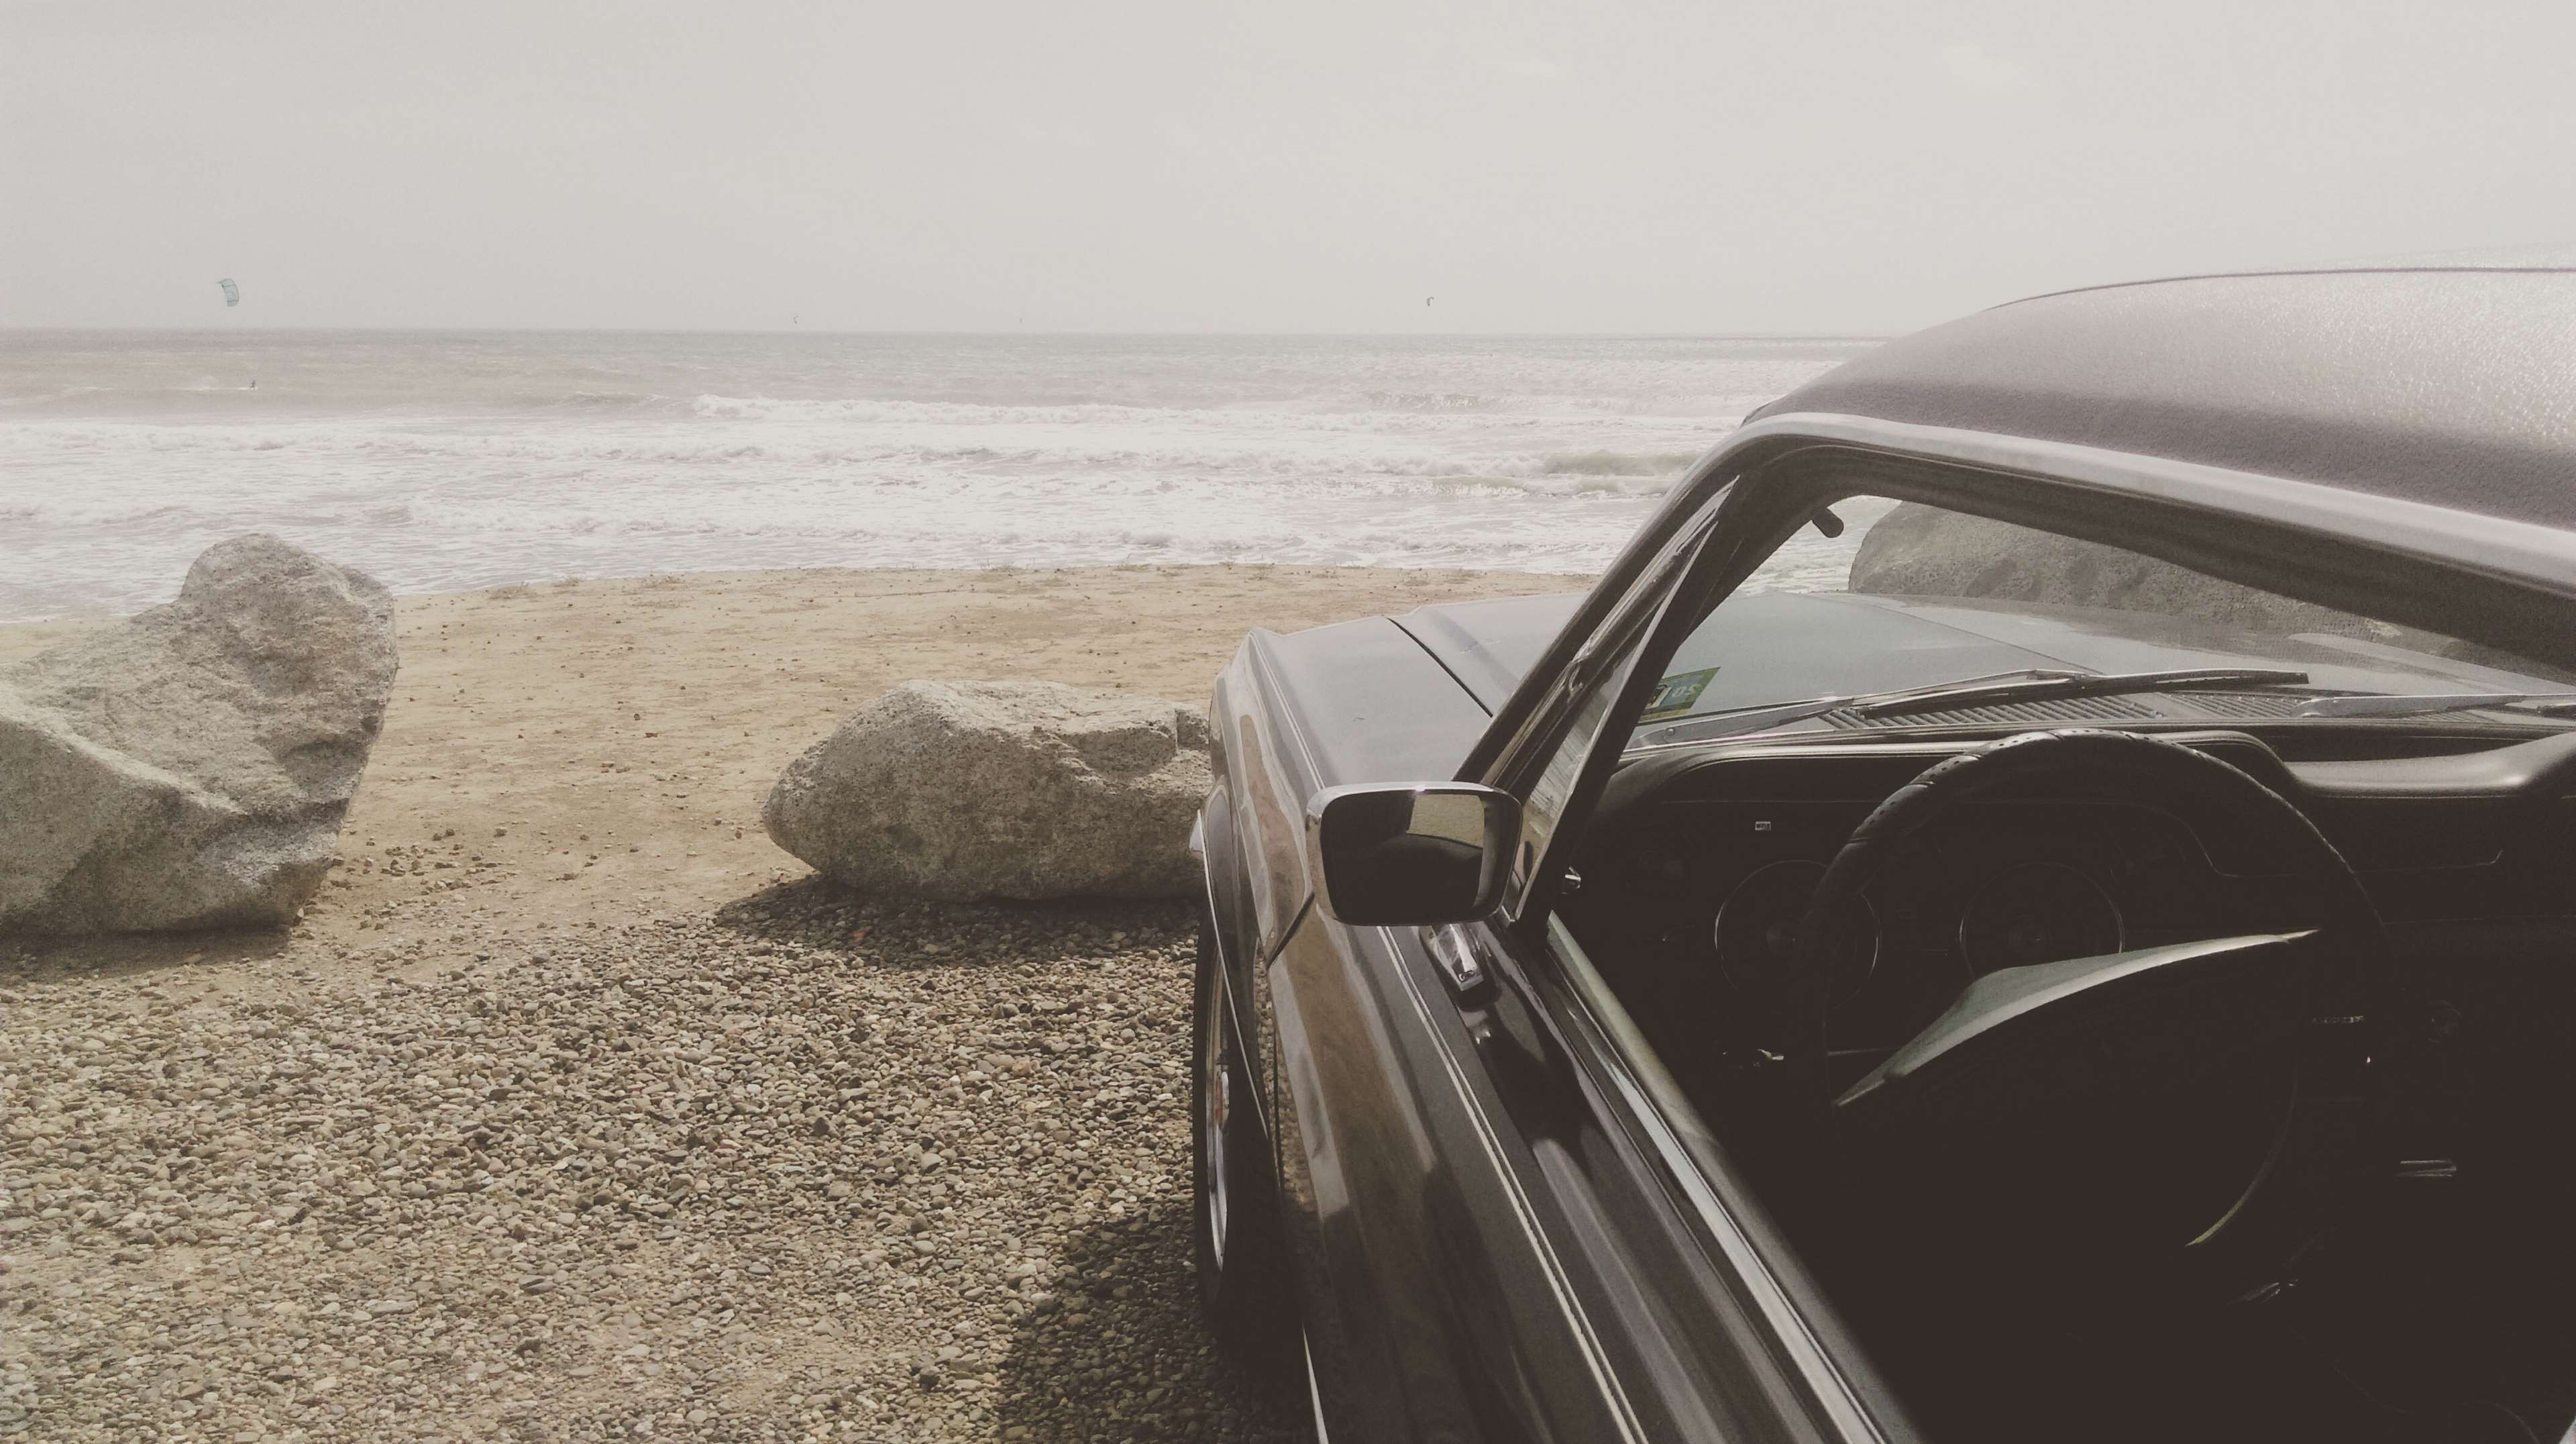 beach, car, mustang, ocean, parked, sand, sea, seaside